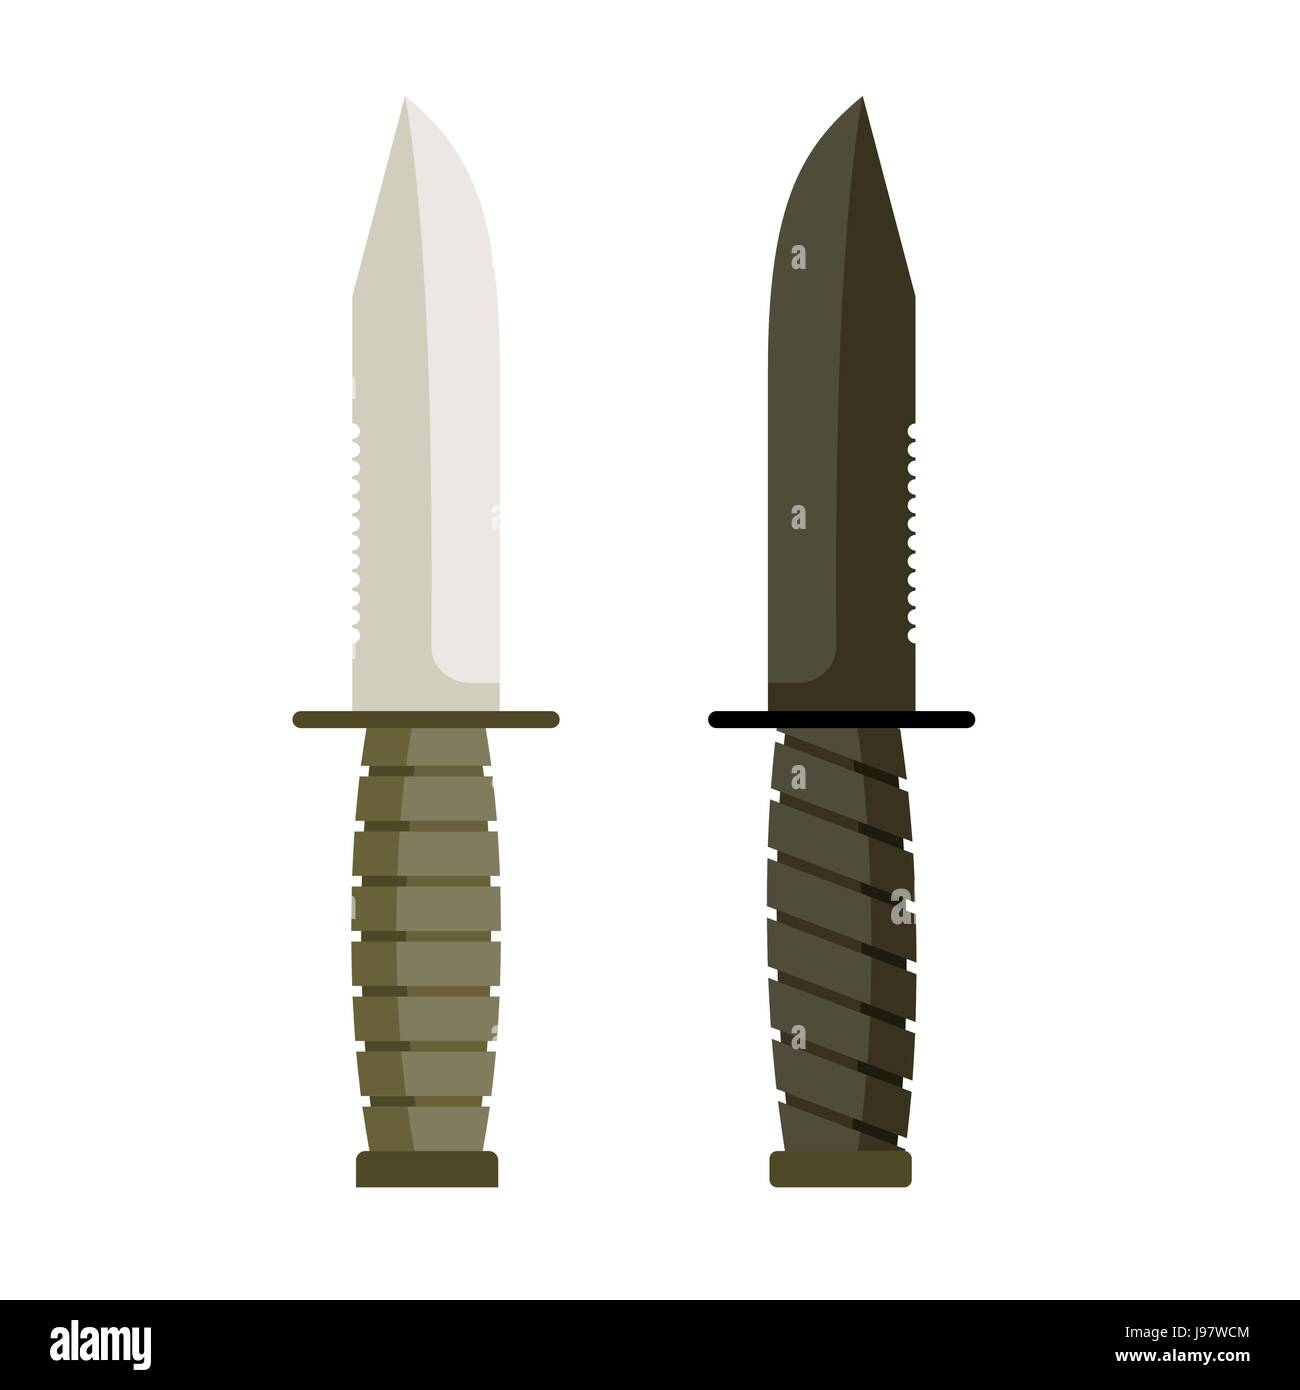 Cuchillo militar del ejército. Conjunto de dos cuchillas marcial